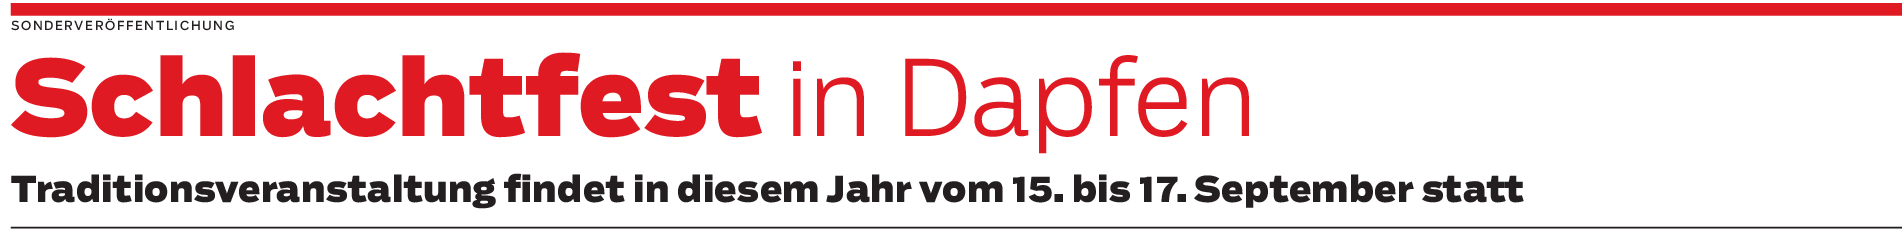 Dapfen: Partyabend und DJ-Sound